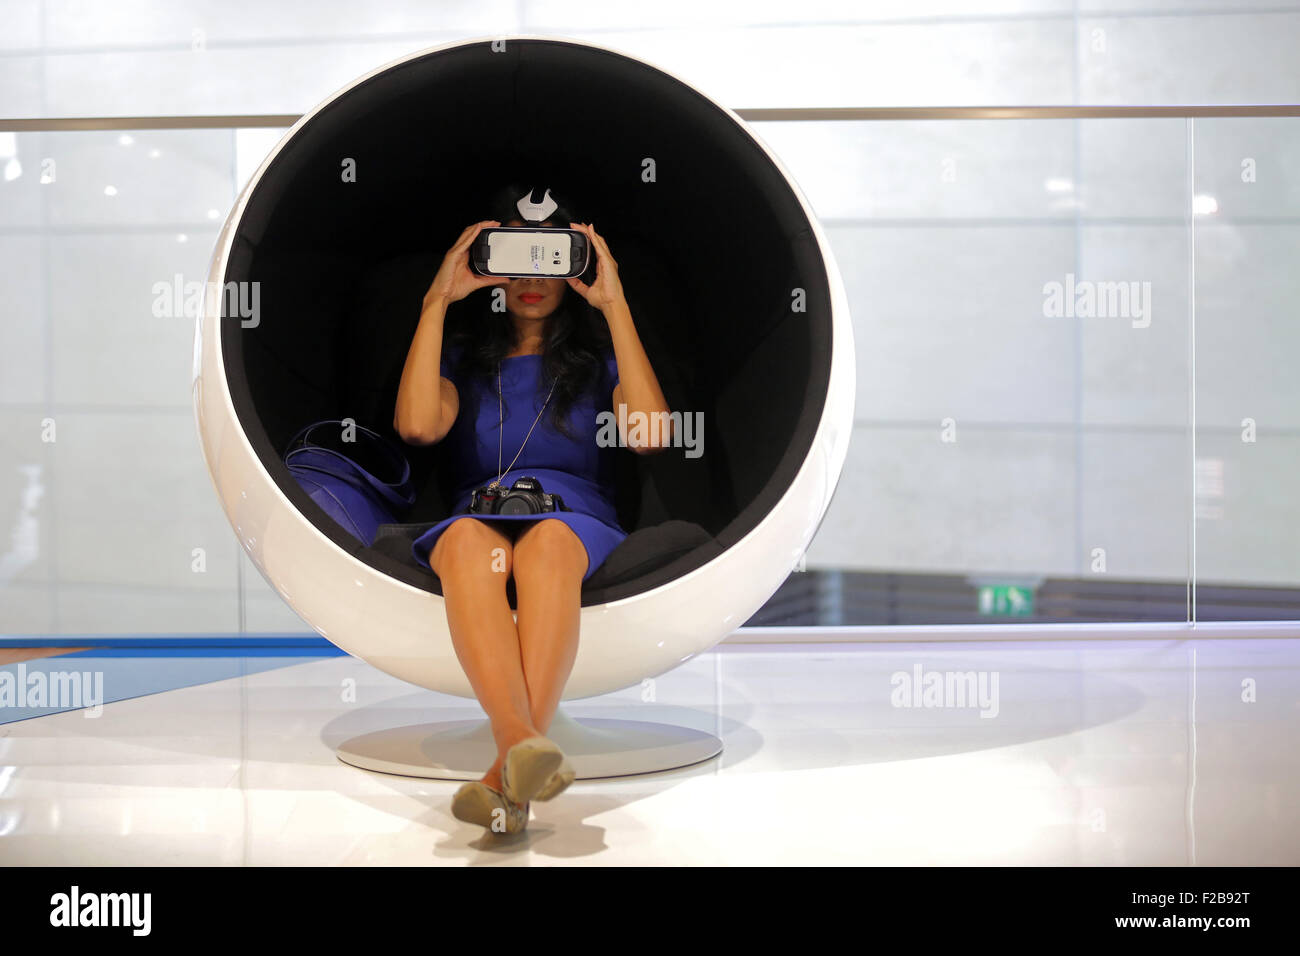 Frankfurt/M, 15.09.2015 - el visitante con una máscara de realidad virtual en el stand de BMW en el 66º Salón Internacional del Automóvil IAA 2015 (Internationale Automobil Ausstellung IAA) en Frankfurt/Main, Alemania Foto de stock